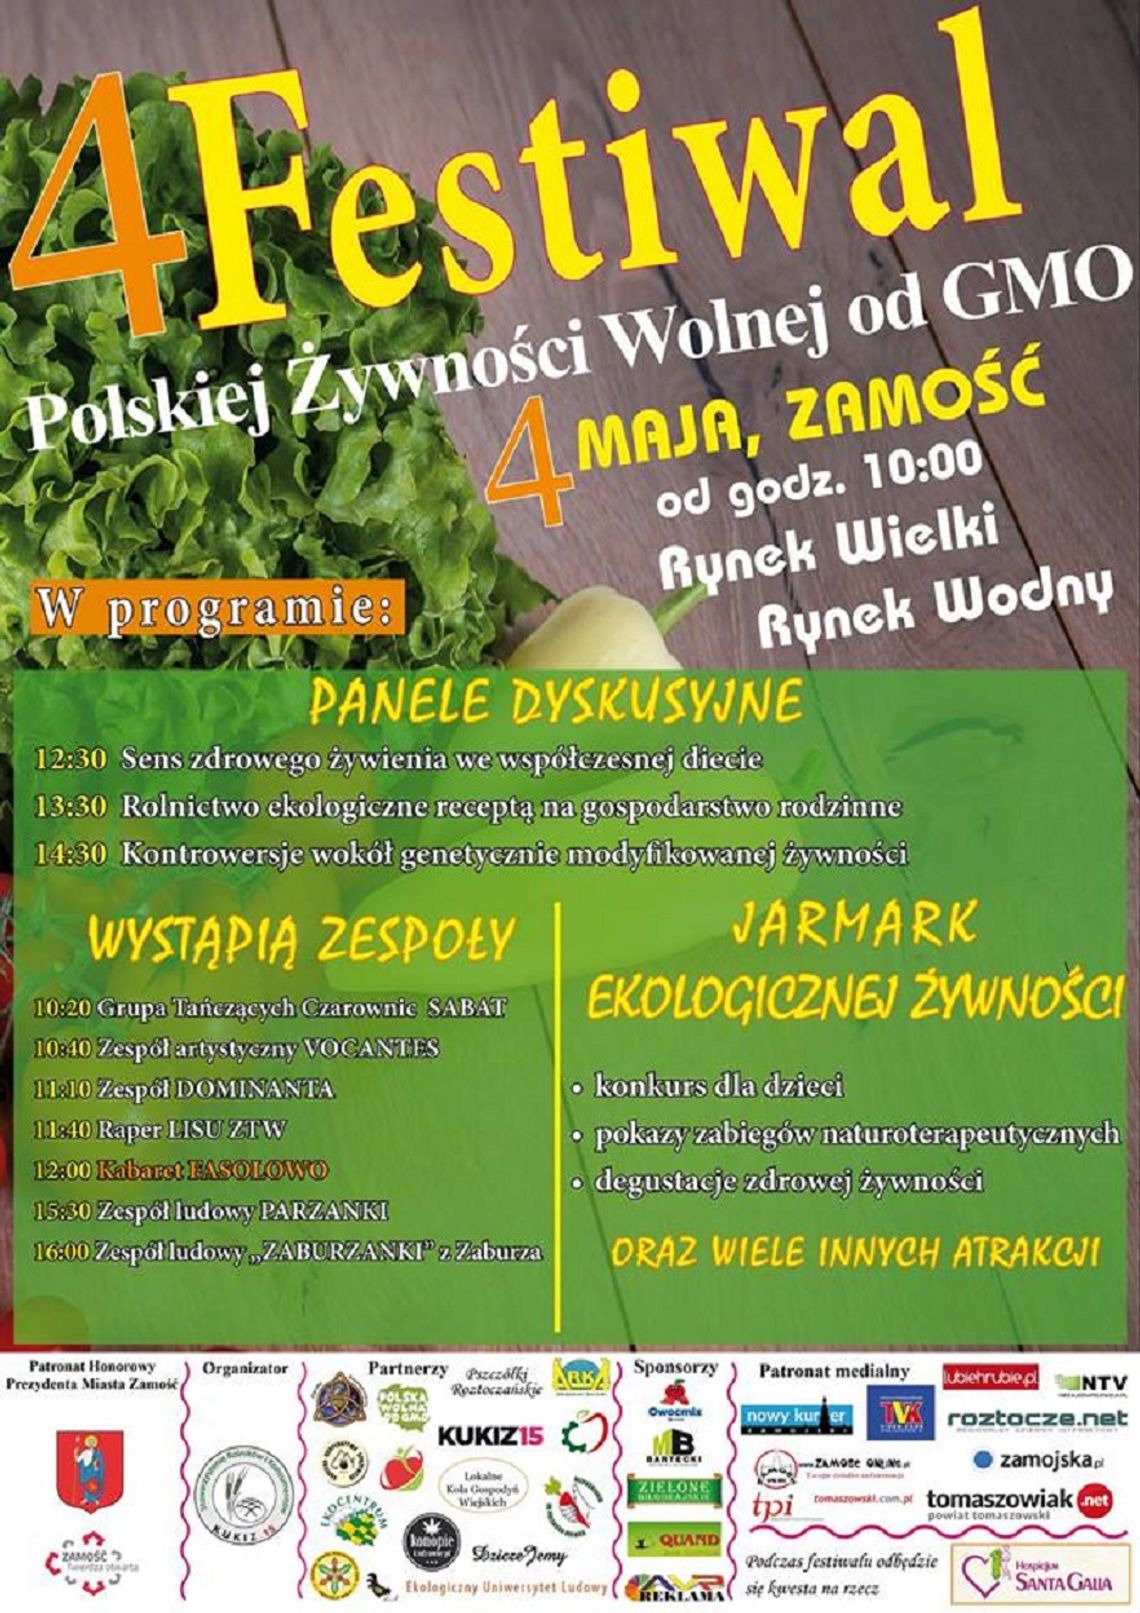 Zamość: Odżywiaj się zdrowo. Festiwal Polskiej Żywności Wolnej od GMO